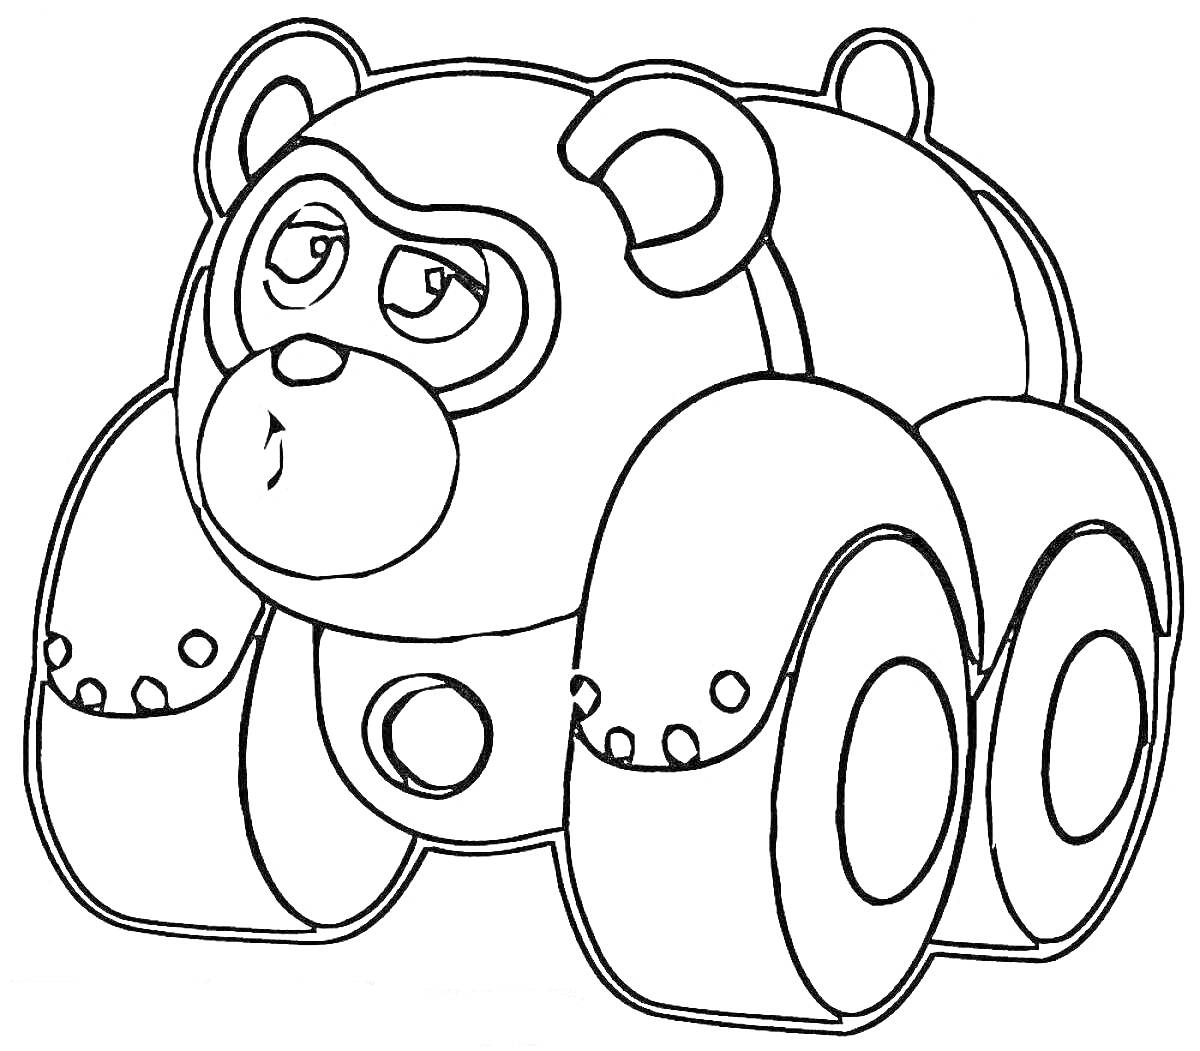 Раскраска Медведь-машина из Врумиз, четырехколесный транспорт с ушами, глазами и маской.